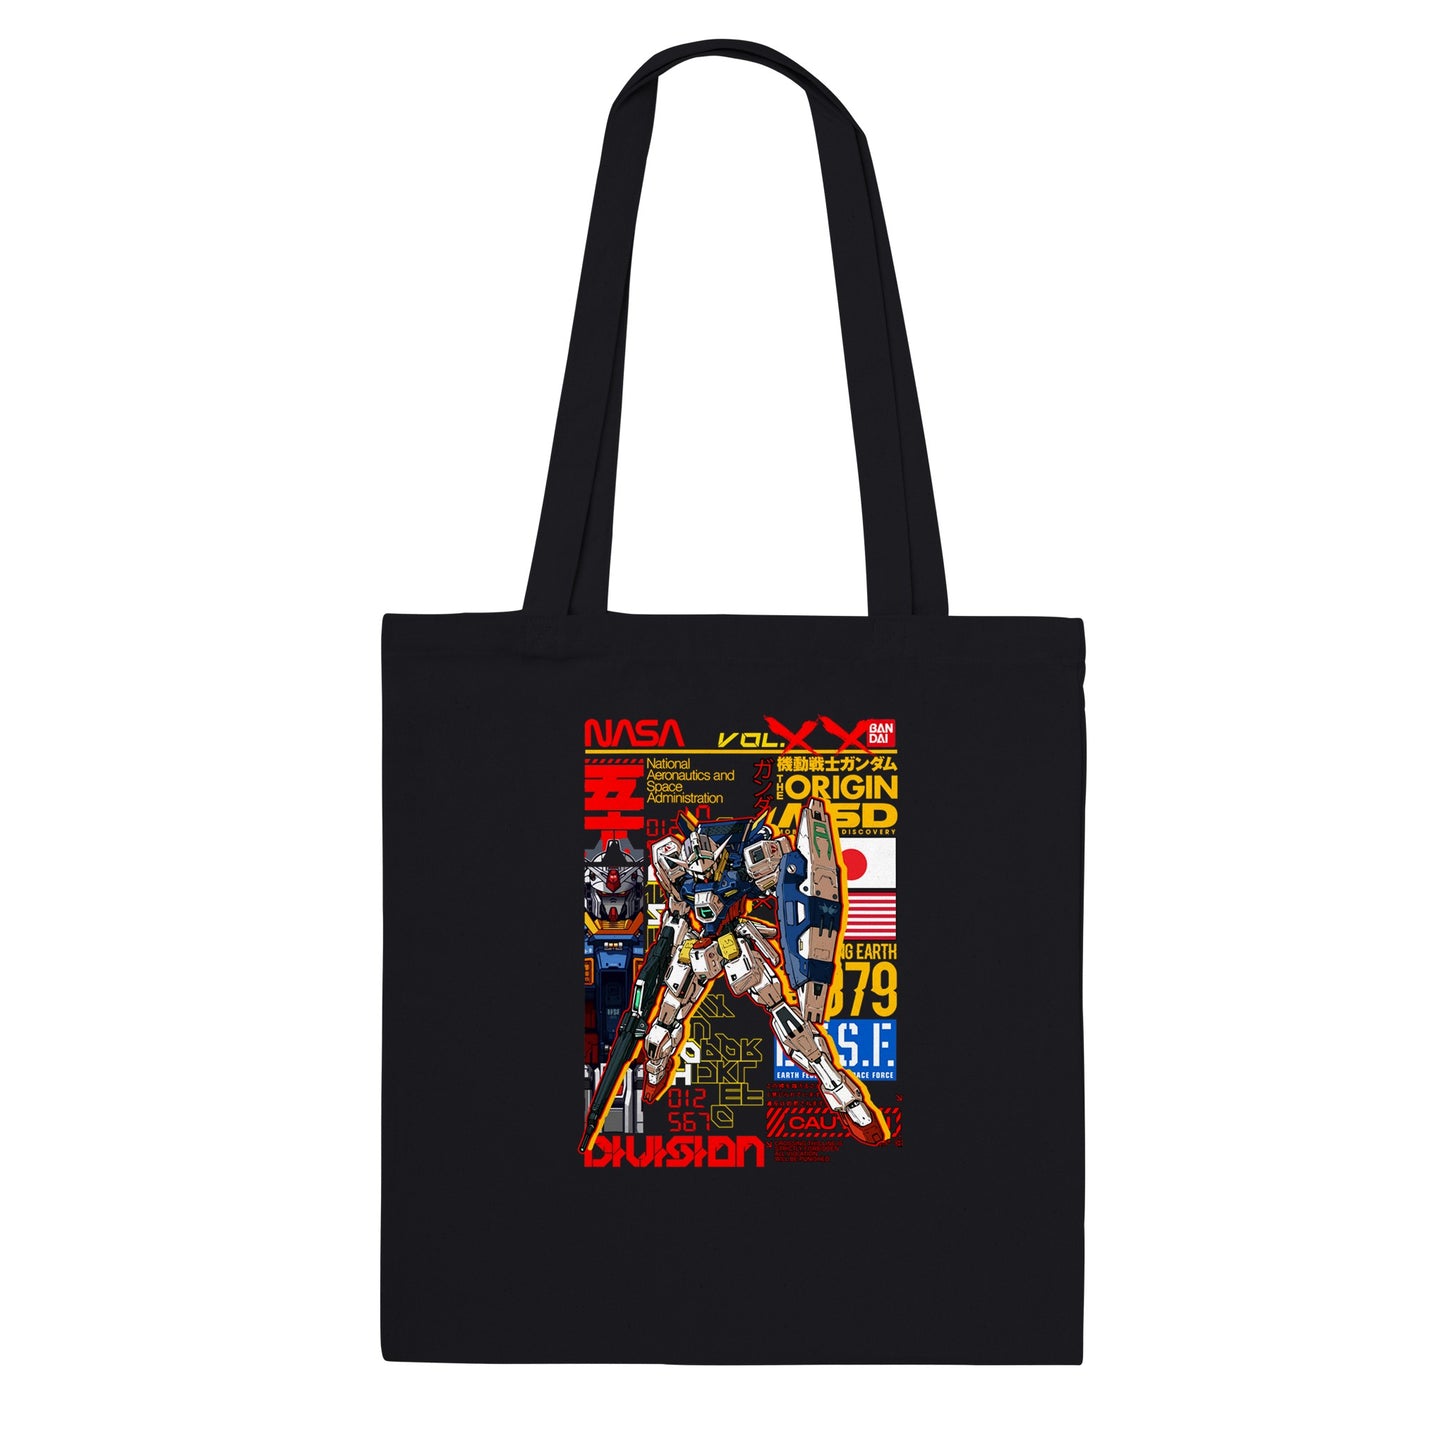 Gundam Tote Bag - Gundam Artwork Vol 2 - Premium Tote Bag